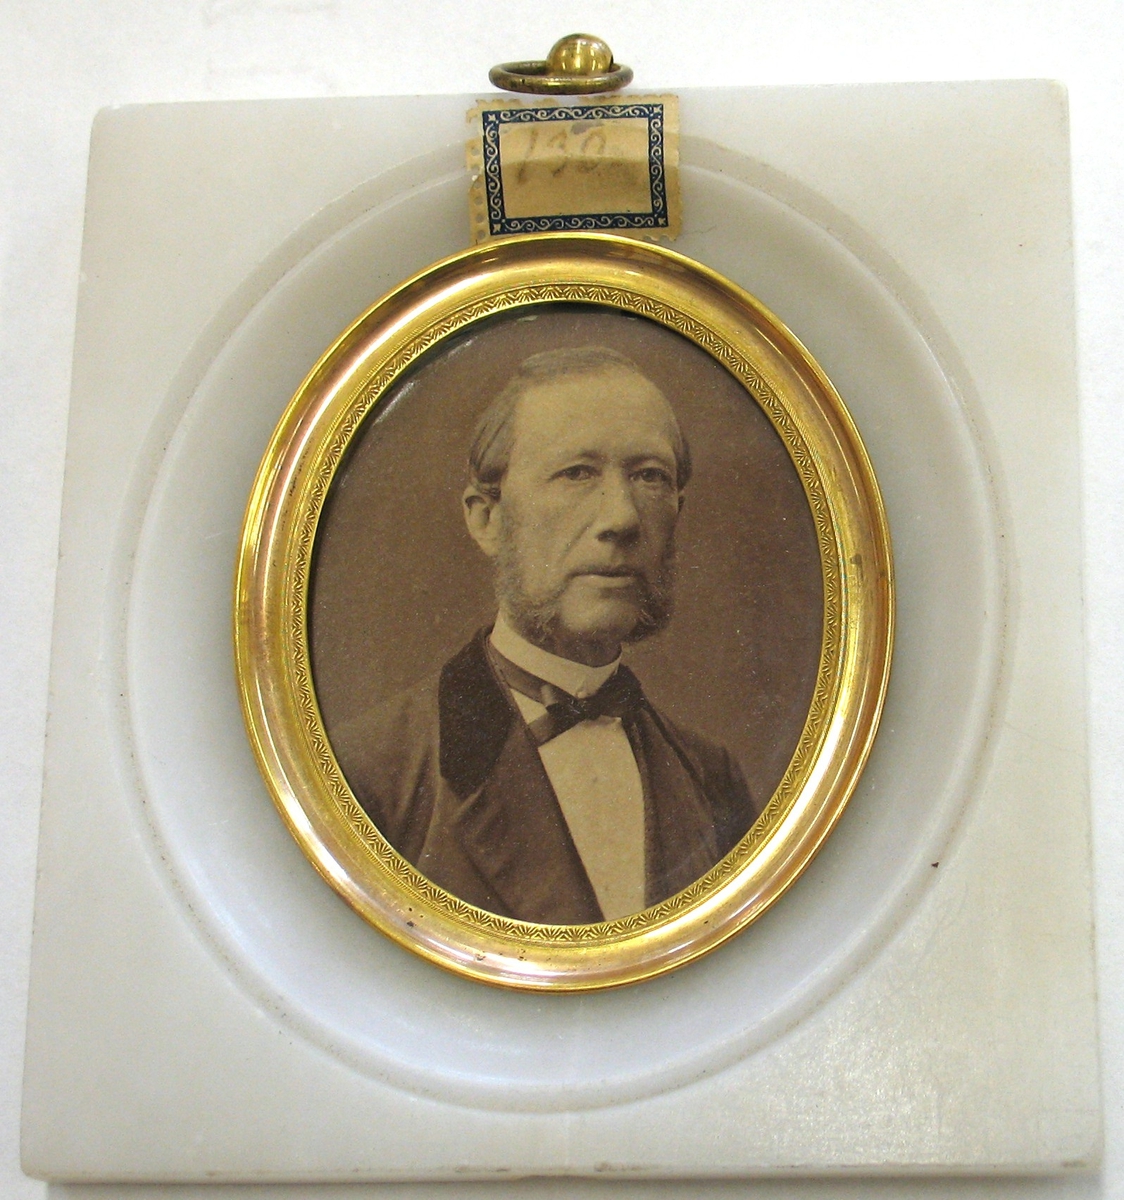 Fotografi av Johan Adolf Andersohn, Vänersborg inom marmorram.

Fotot tillhör samlingen: Adolf Andersohn